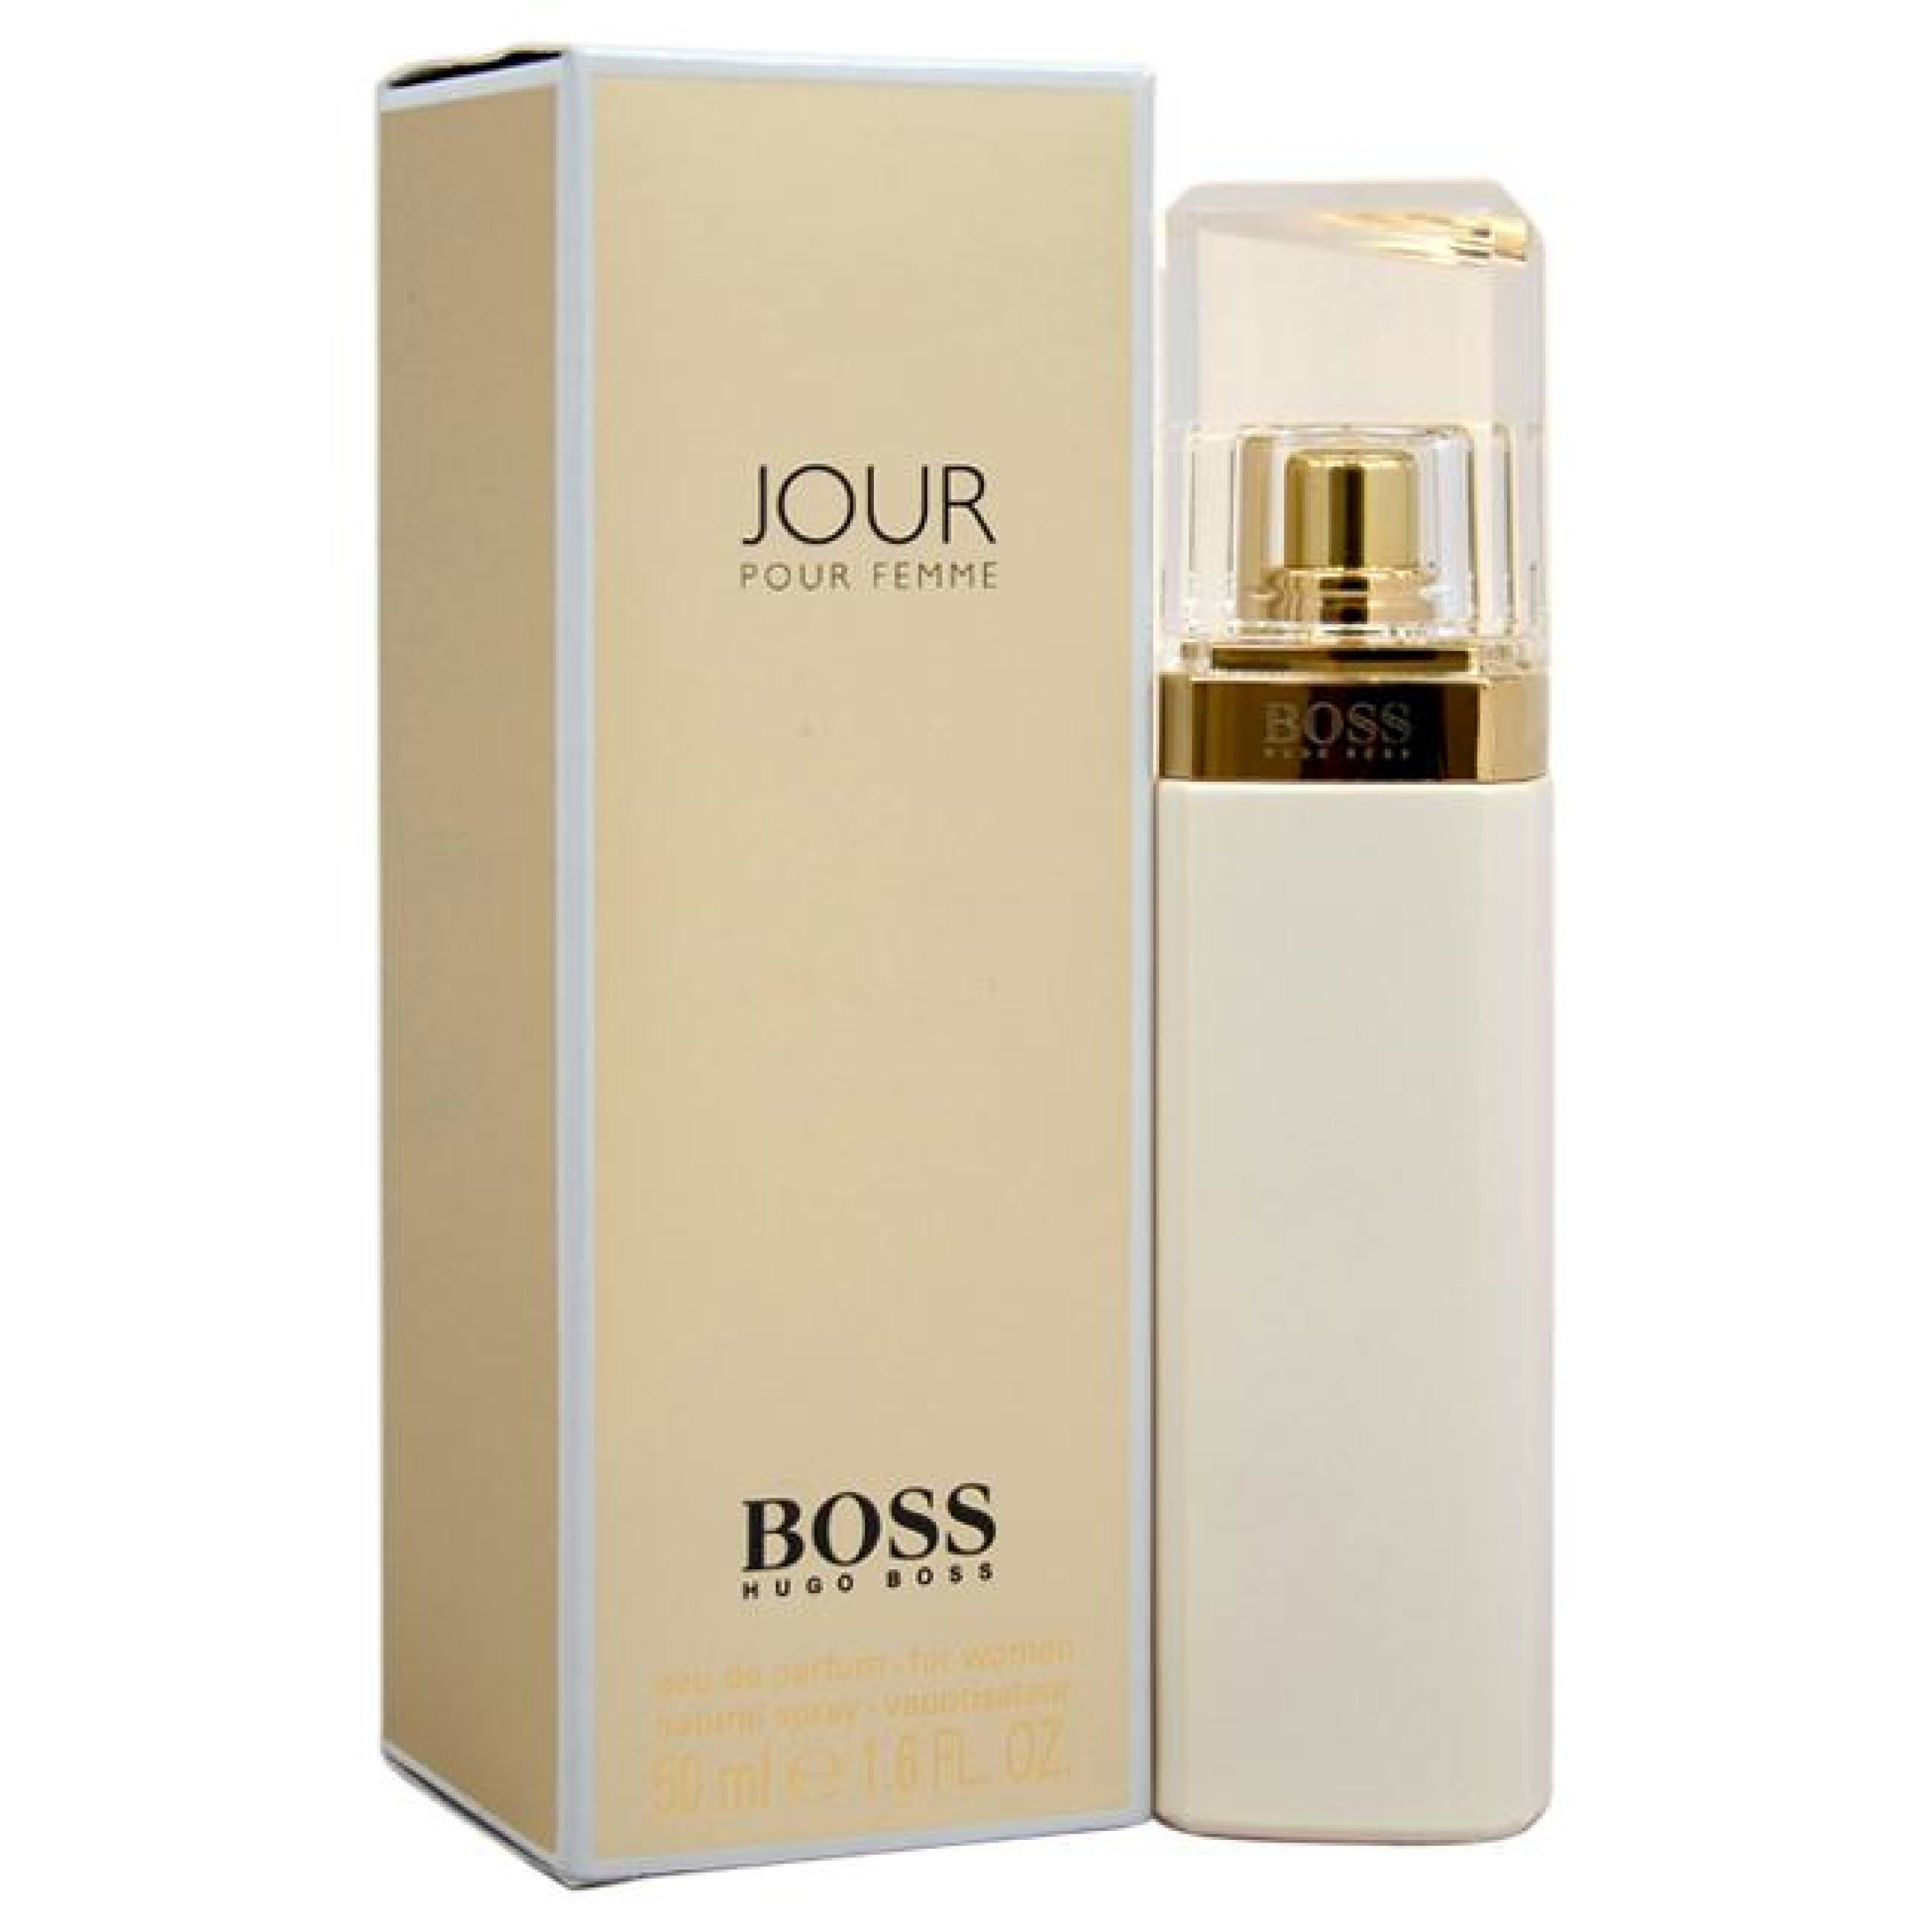 Hugo Boss Jour Pour Femme 75Ml Edp Spray (W)